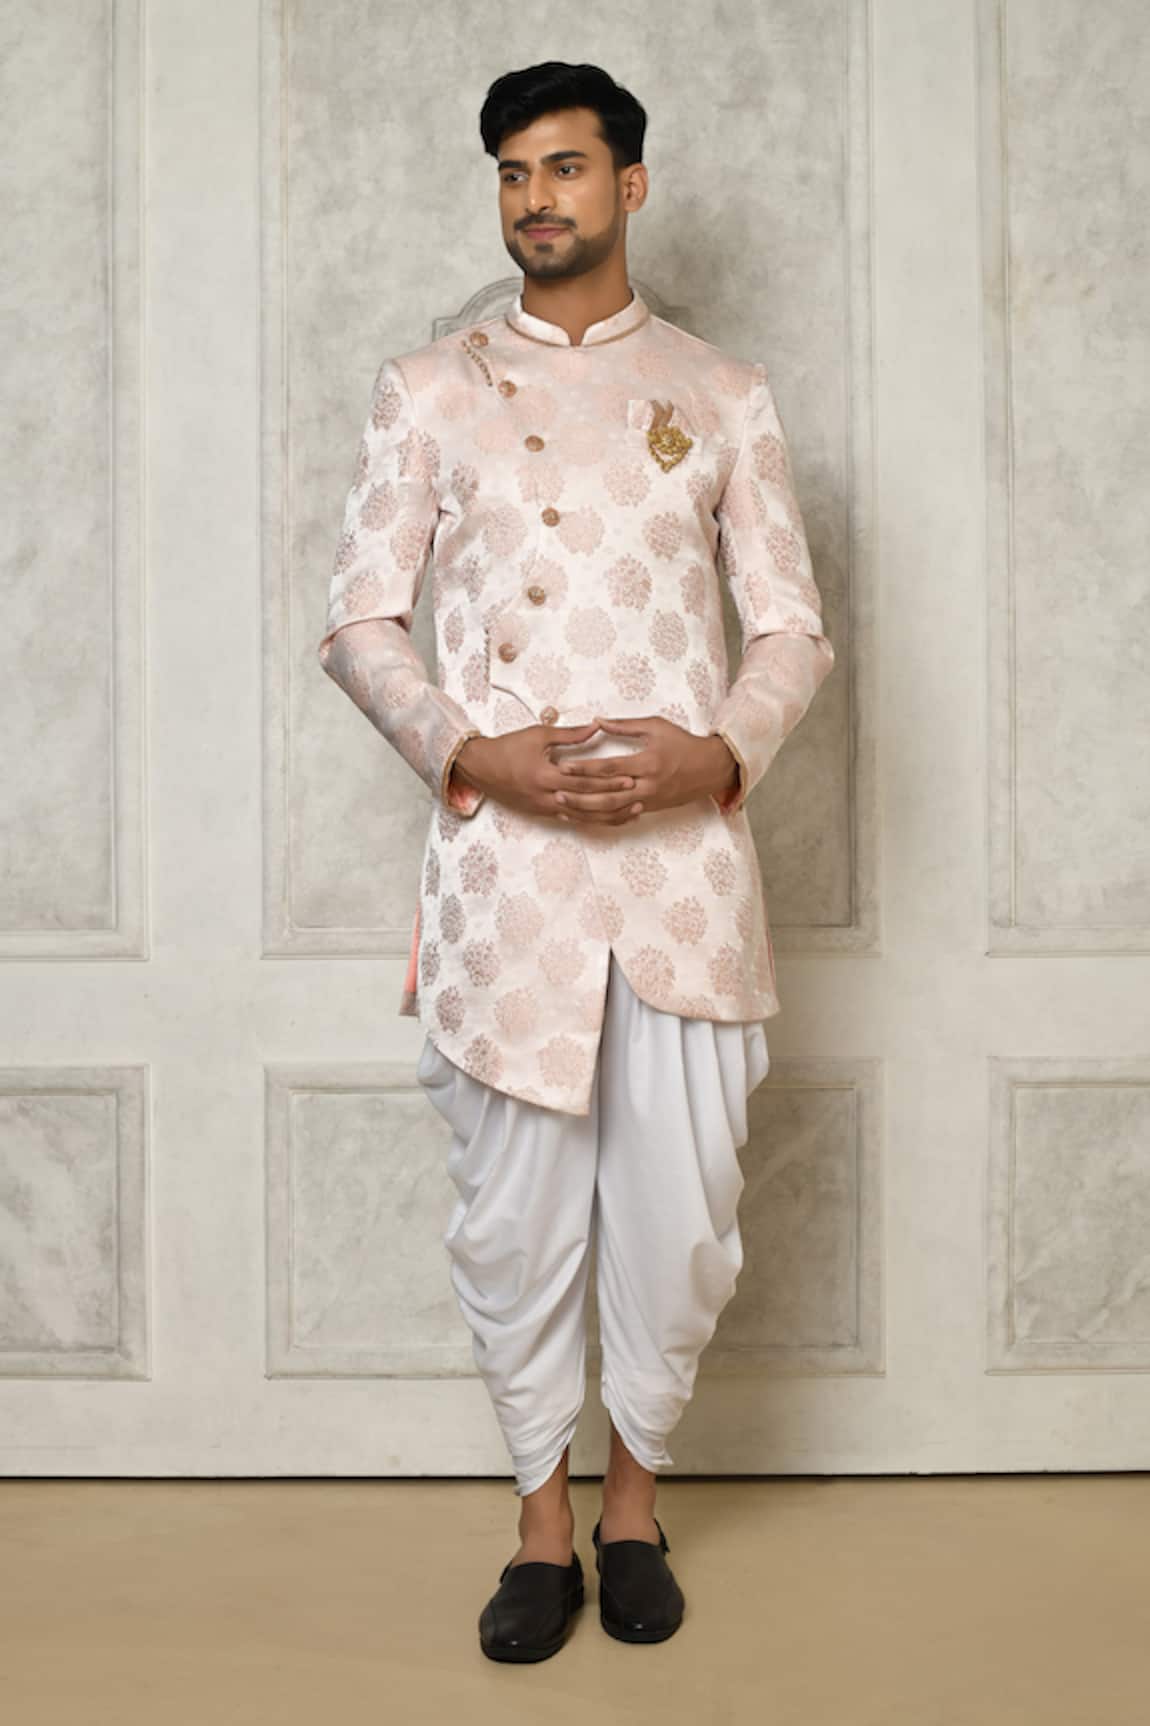 Aryavir Malhotra Floral Butti Pattern Sherwani With Dhoti Pant